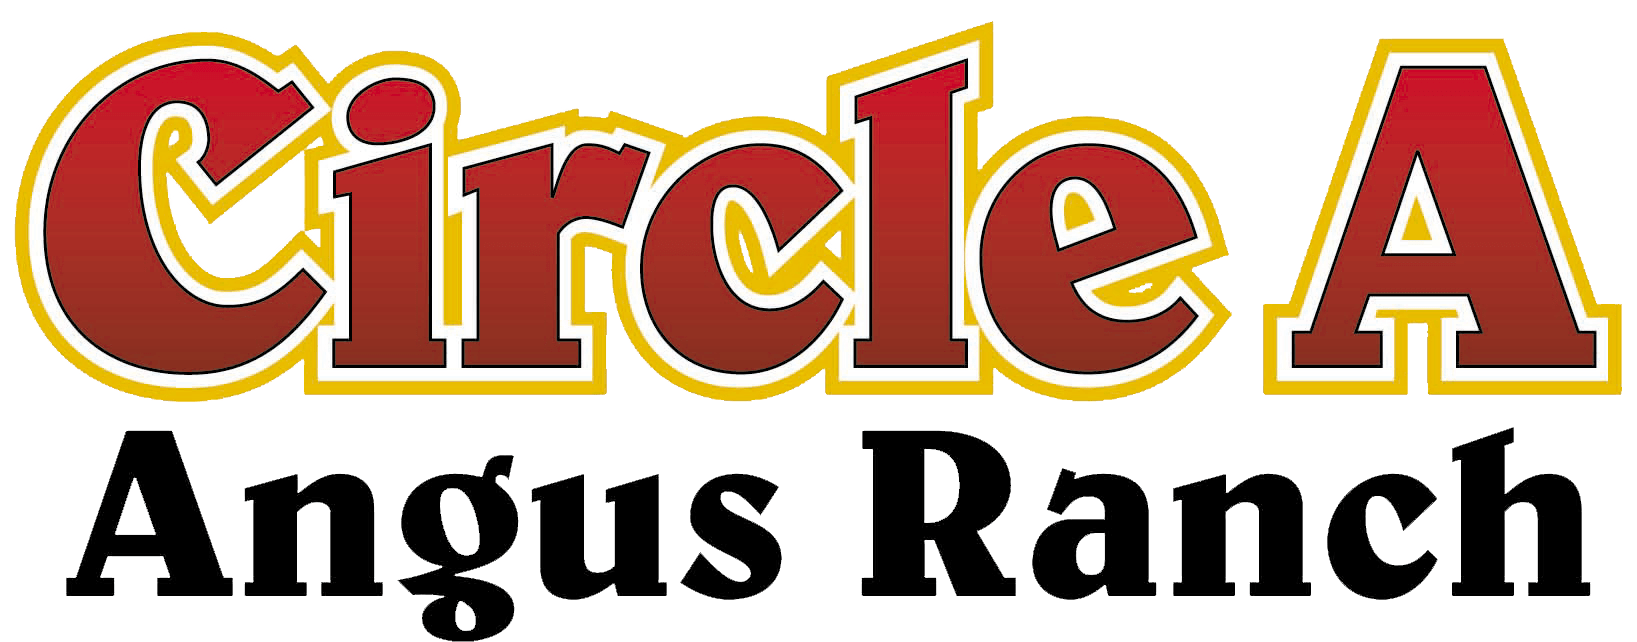 Ranch Circle Logo - Home - Circle A Ranch